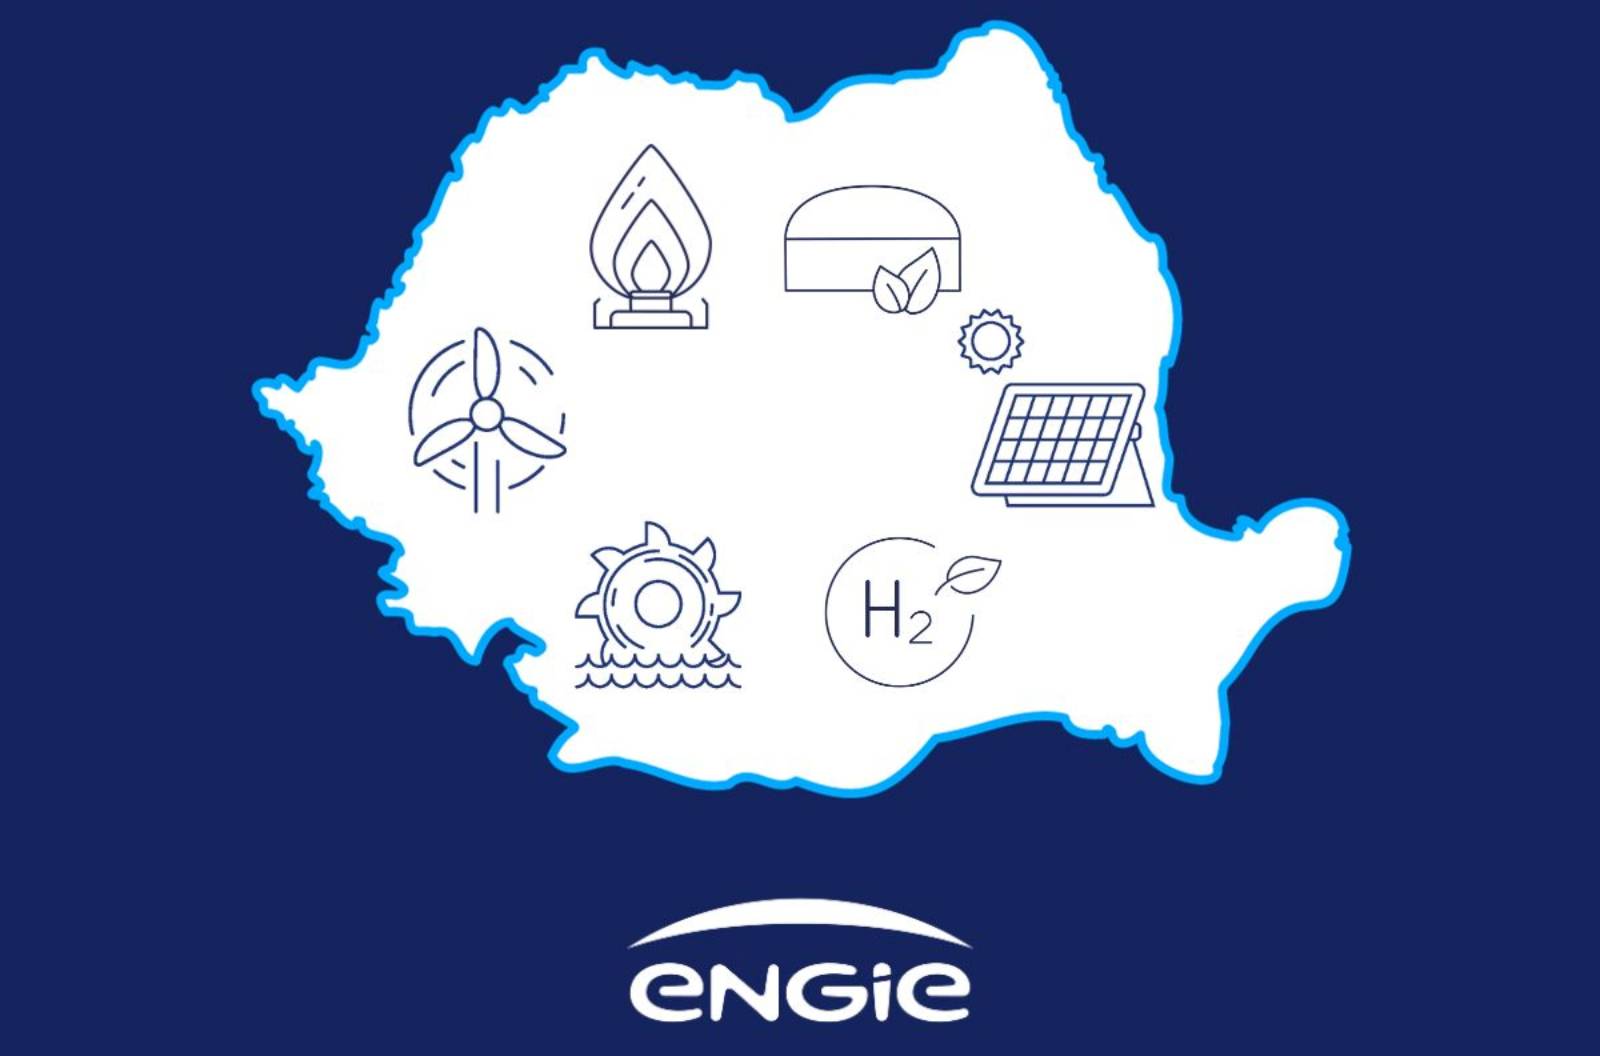 ENGIE Avis Officiel de DERNIER MOMENT Attention Clients Roumanie